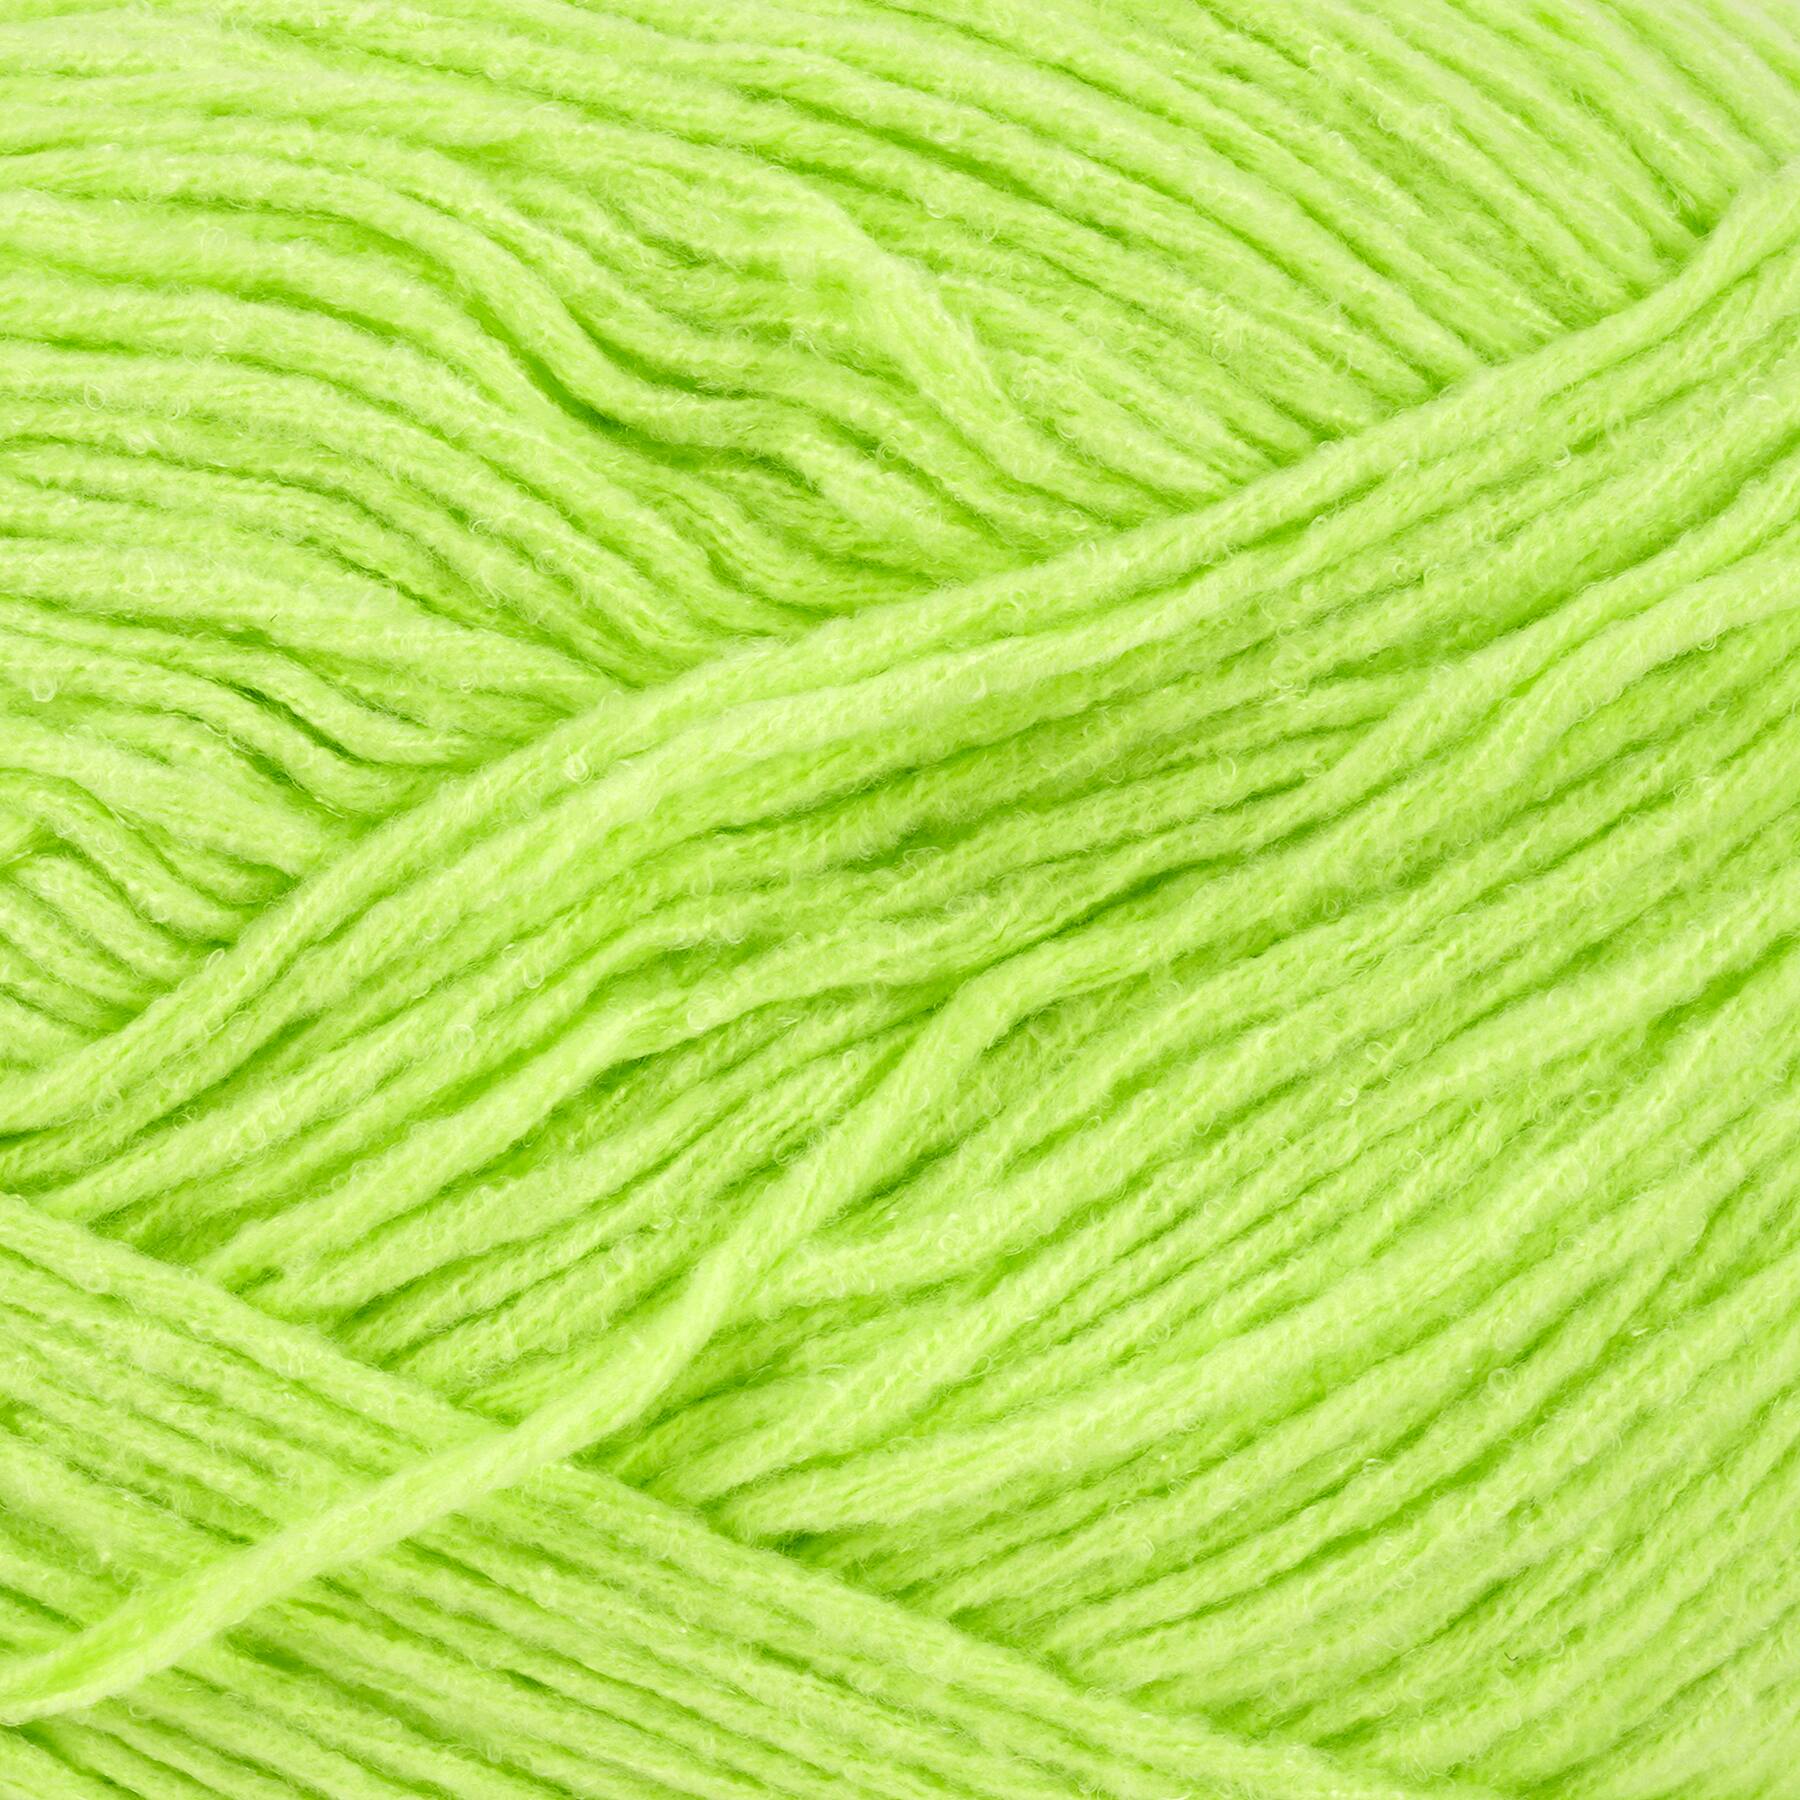 YARNART MELODY Yarn Blend Wool Multicolor Yarn Rainbow Melange